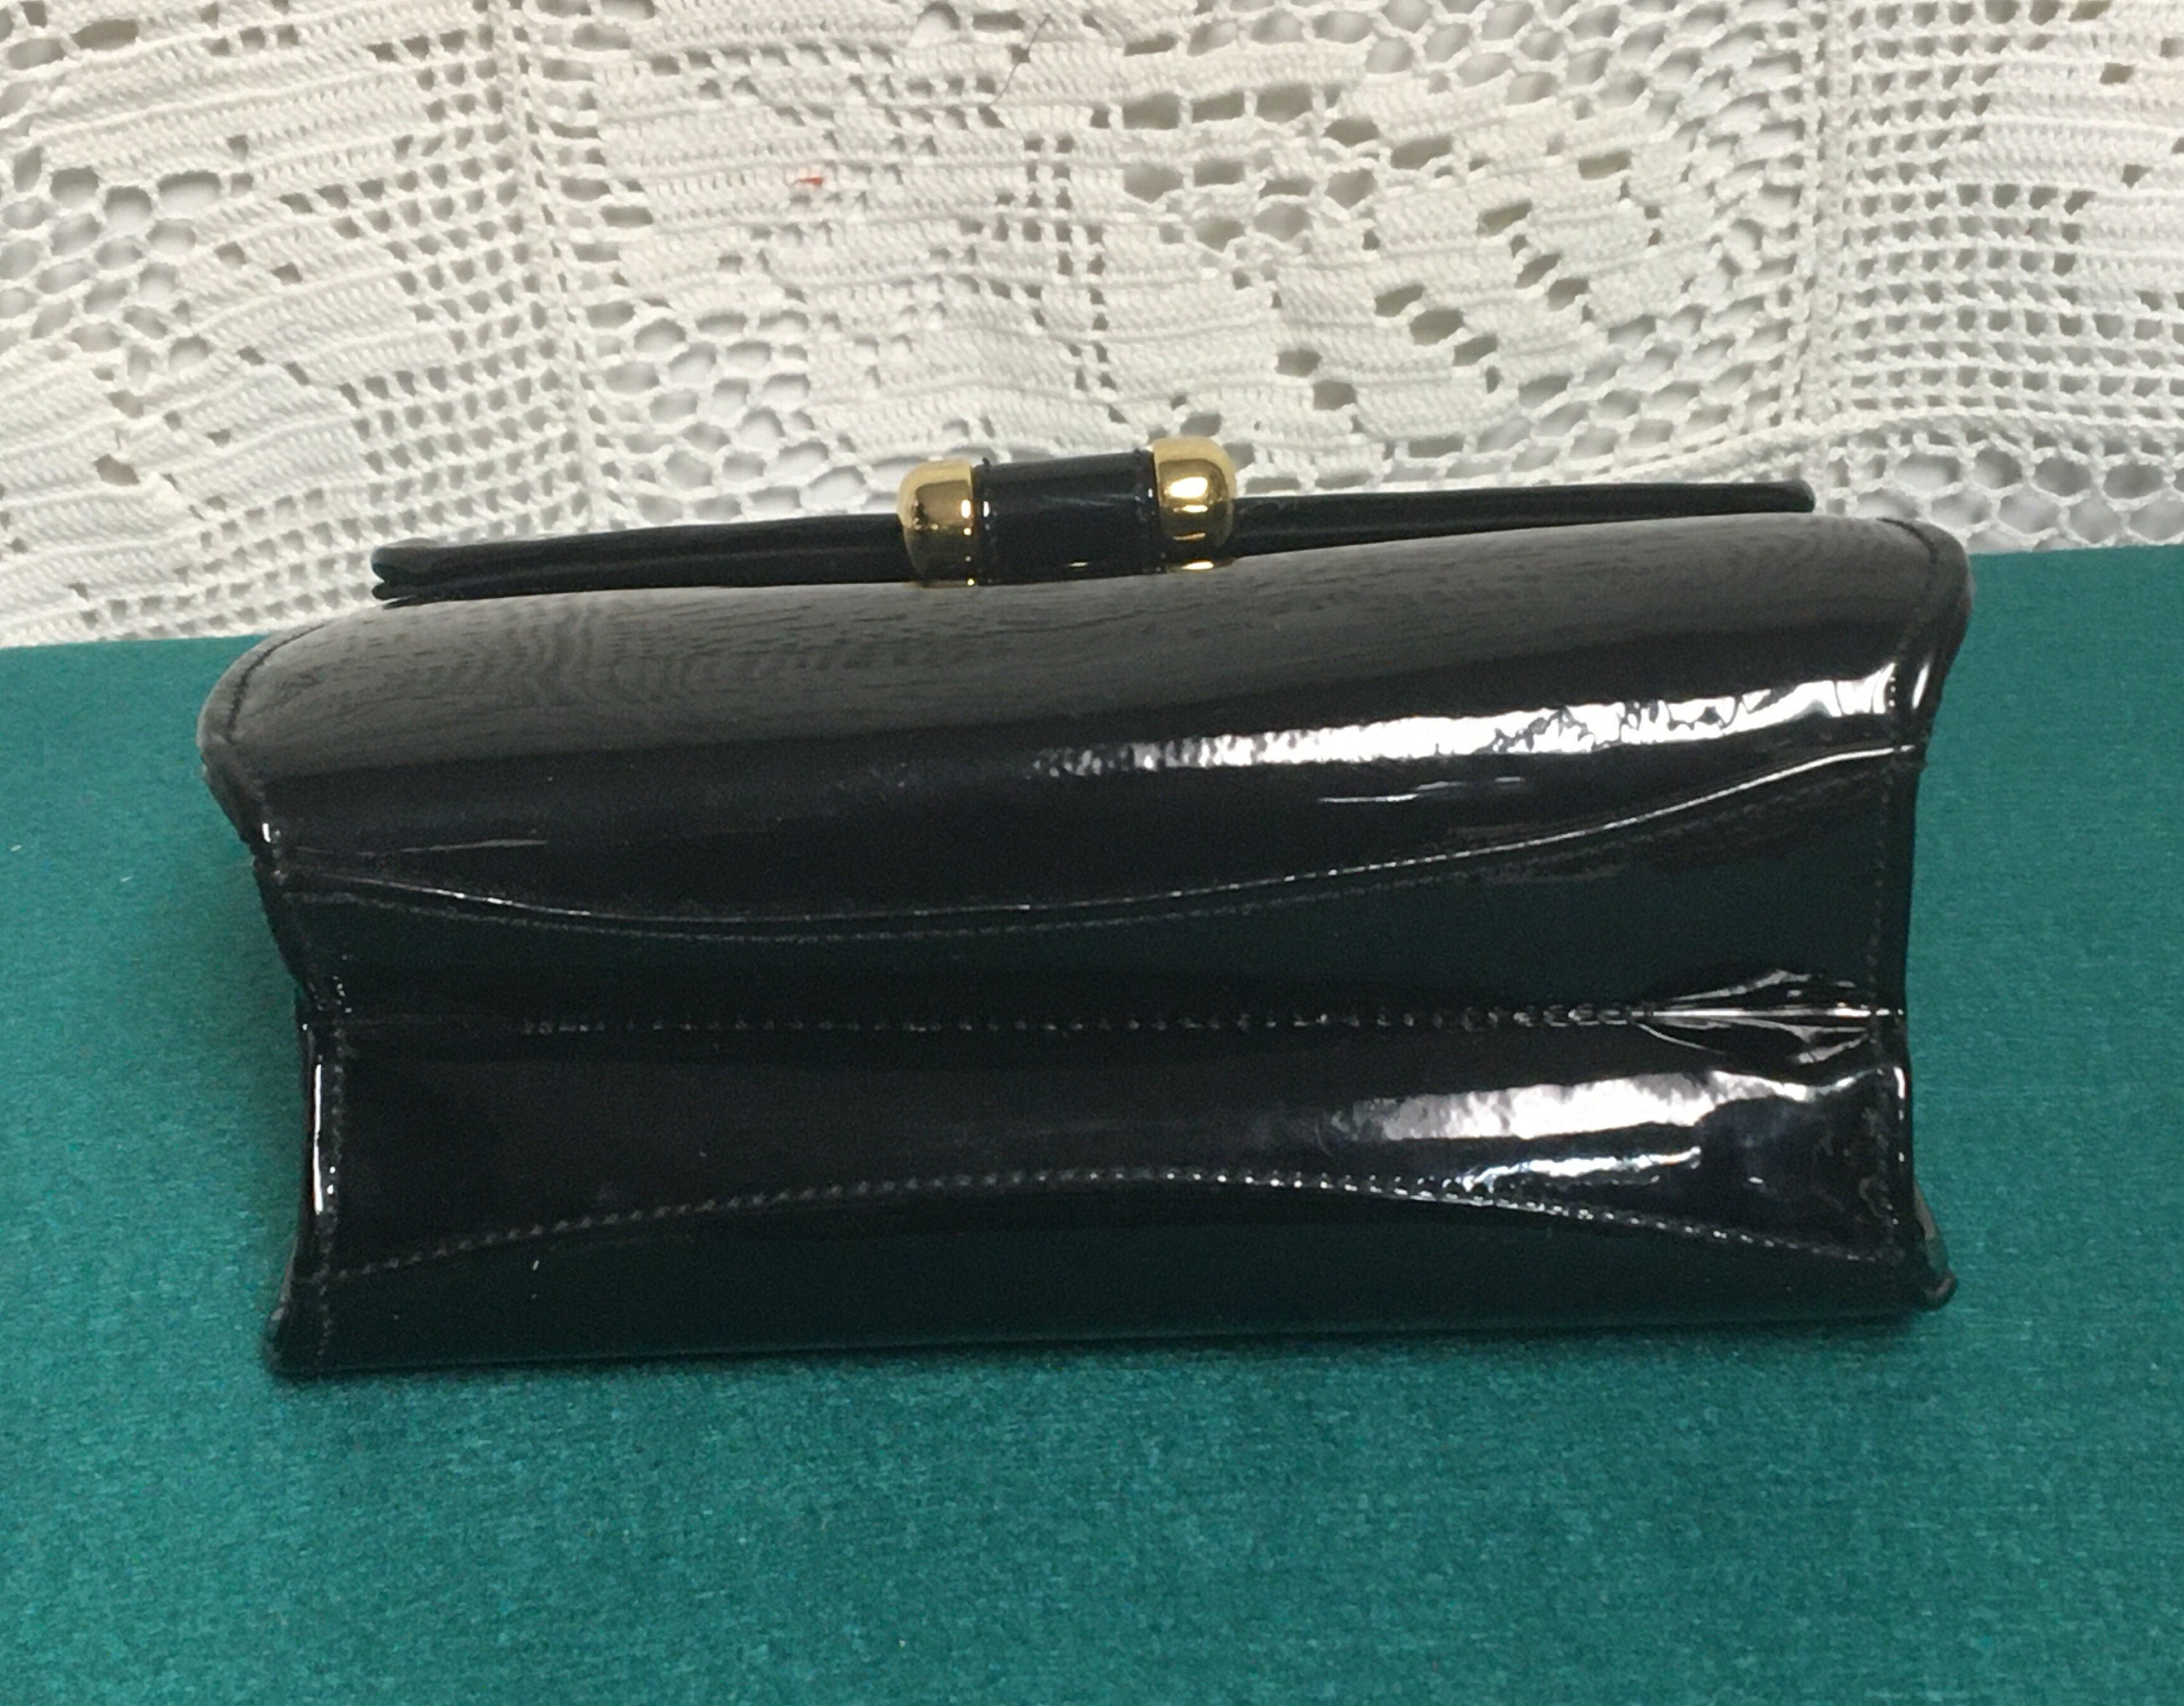 Patent Leather Handbag, Shoulder Bag, Adjustable Detachable Strap